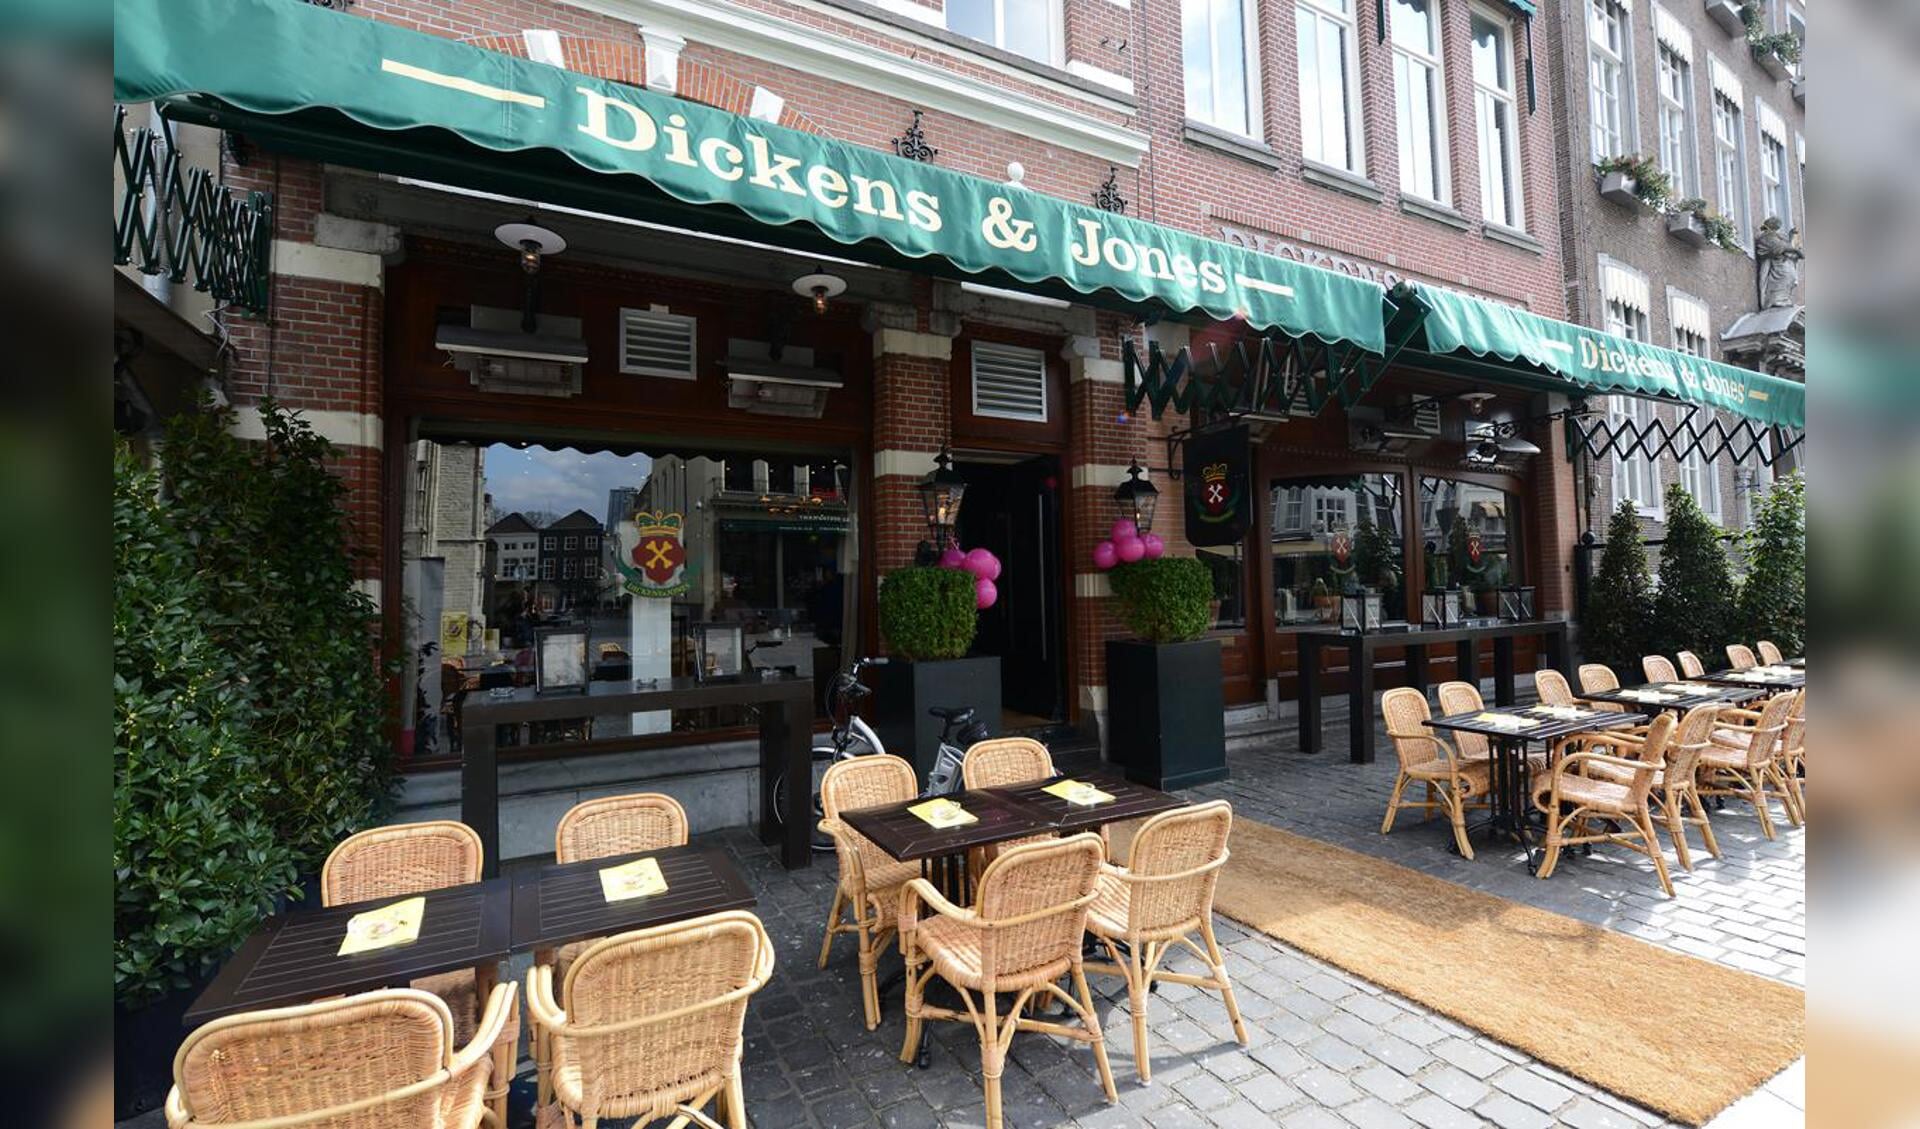 Restaurant Dickens en Jones, Grote Markt. foto Hinke Rutten